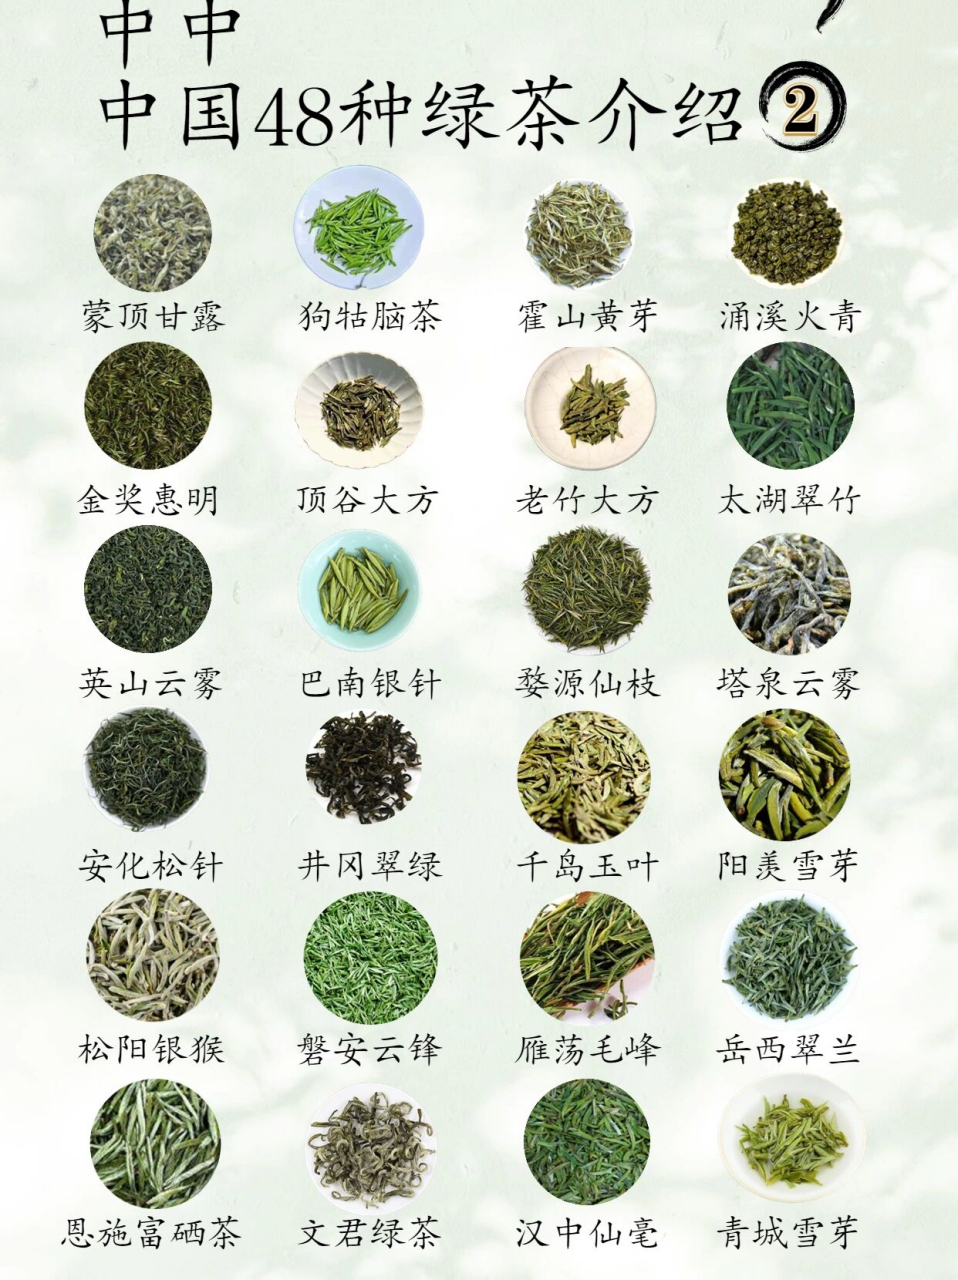 六大茶类之绿茶篇46615   95绿茶是我国品种最多的茶类,很多